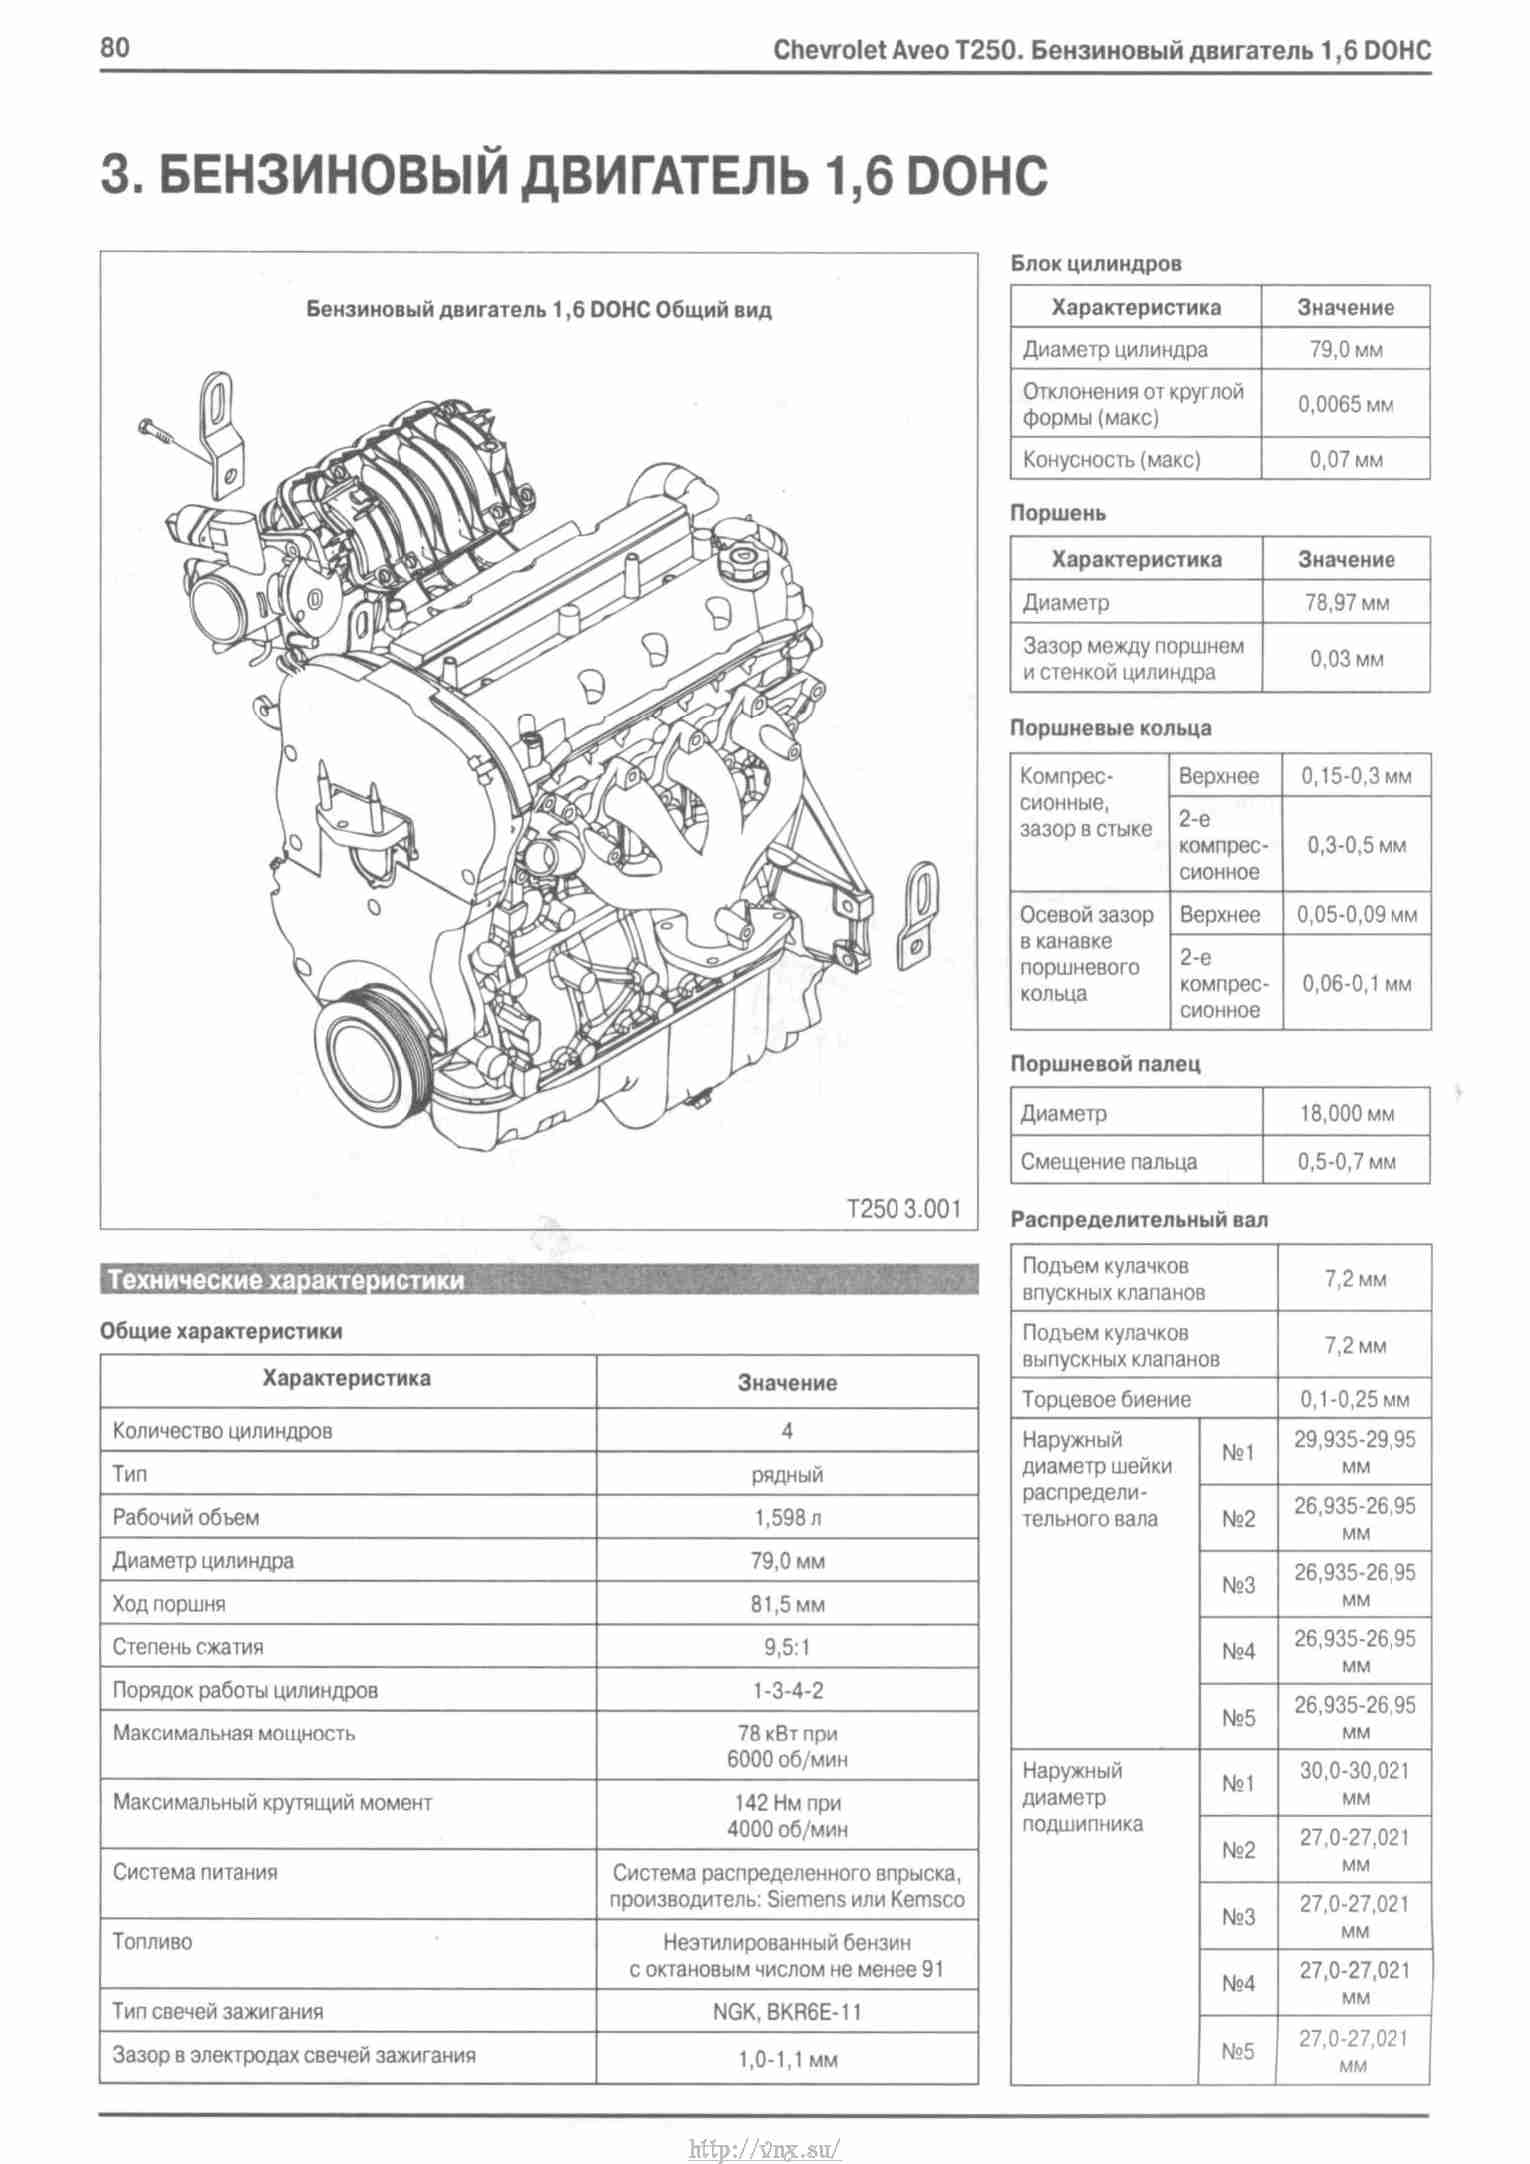 Двигатель F14D3 создан для автомобилей Chevrolet, имеет 130 Нм крутящего момента и 94 л с мощности Считается надежным рядным атмосферным бензиновым мотором